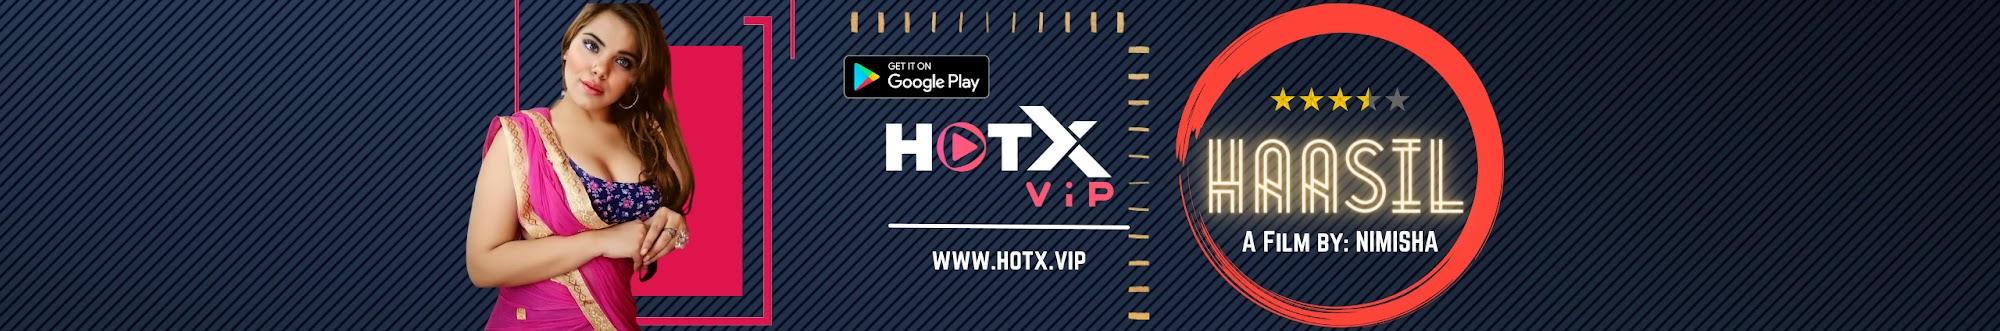 HOTX VIP ORIGINALS